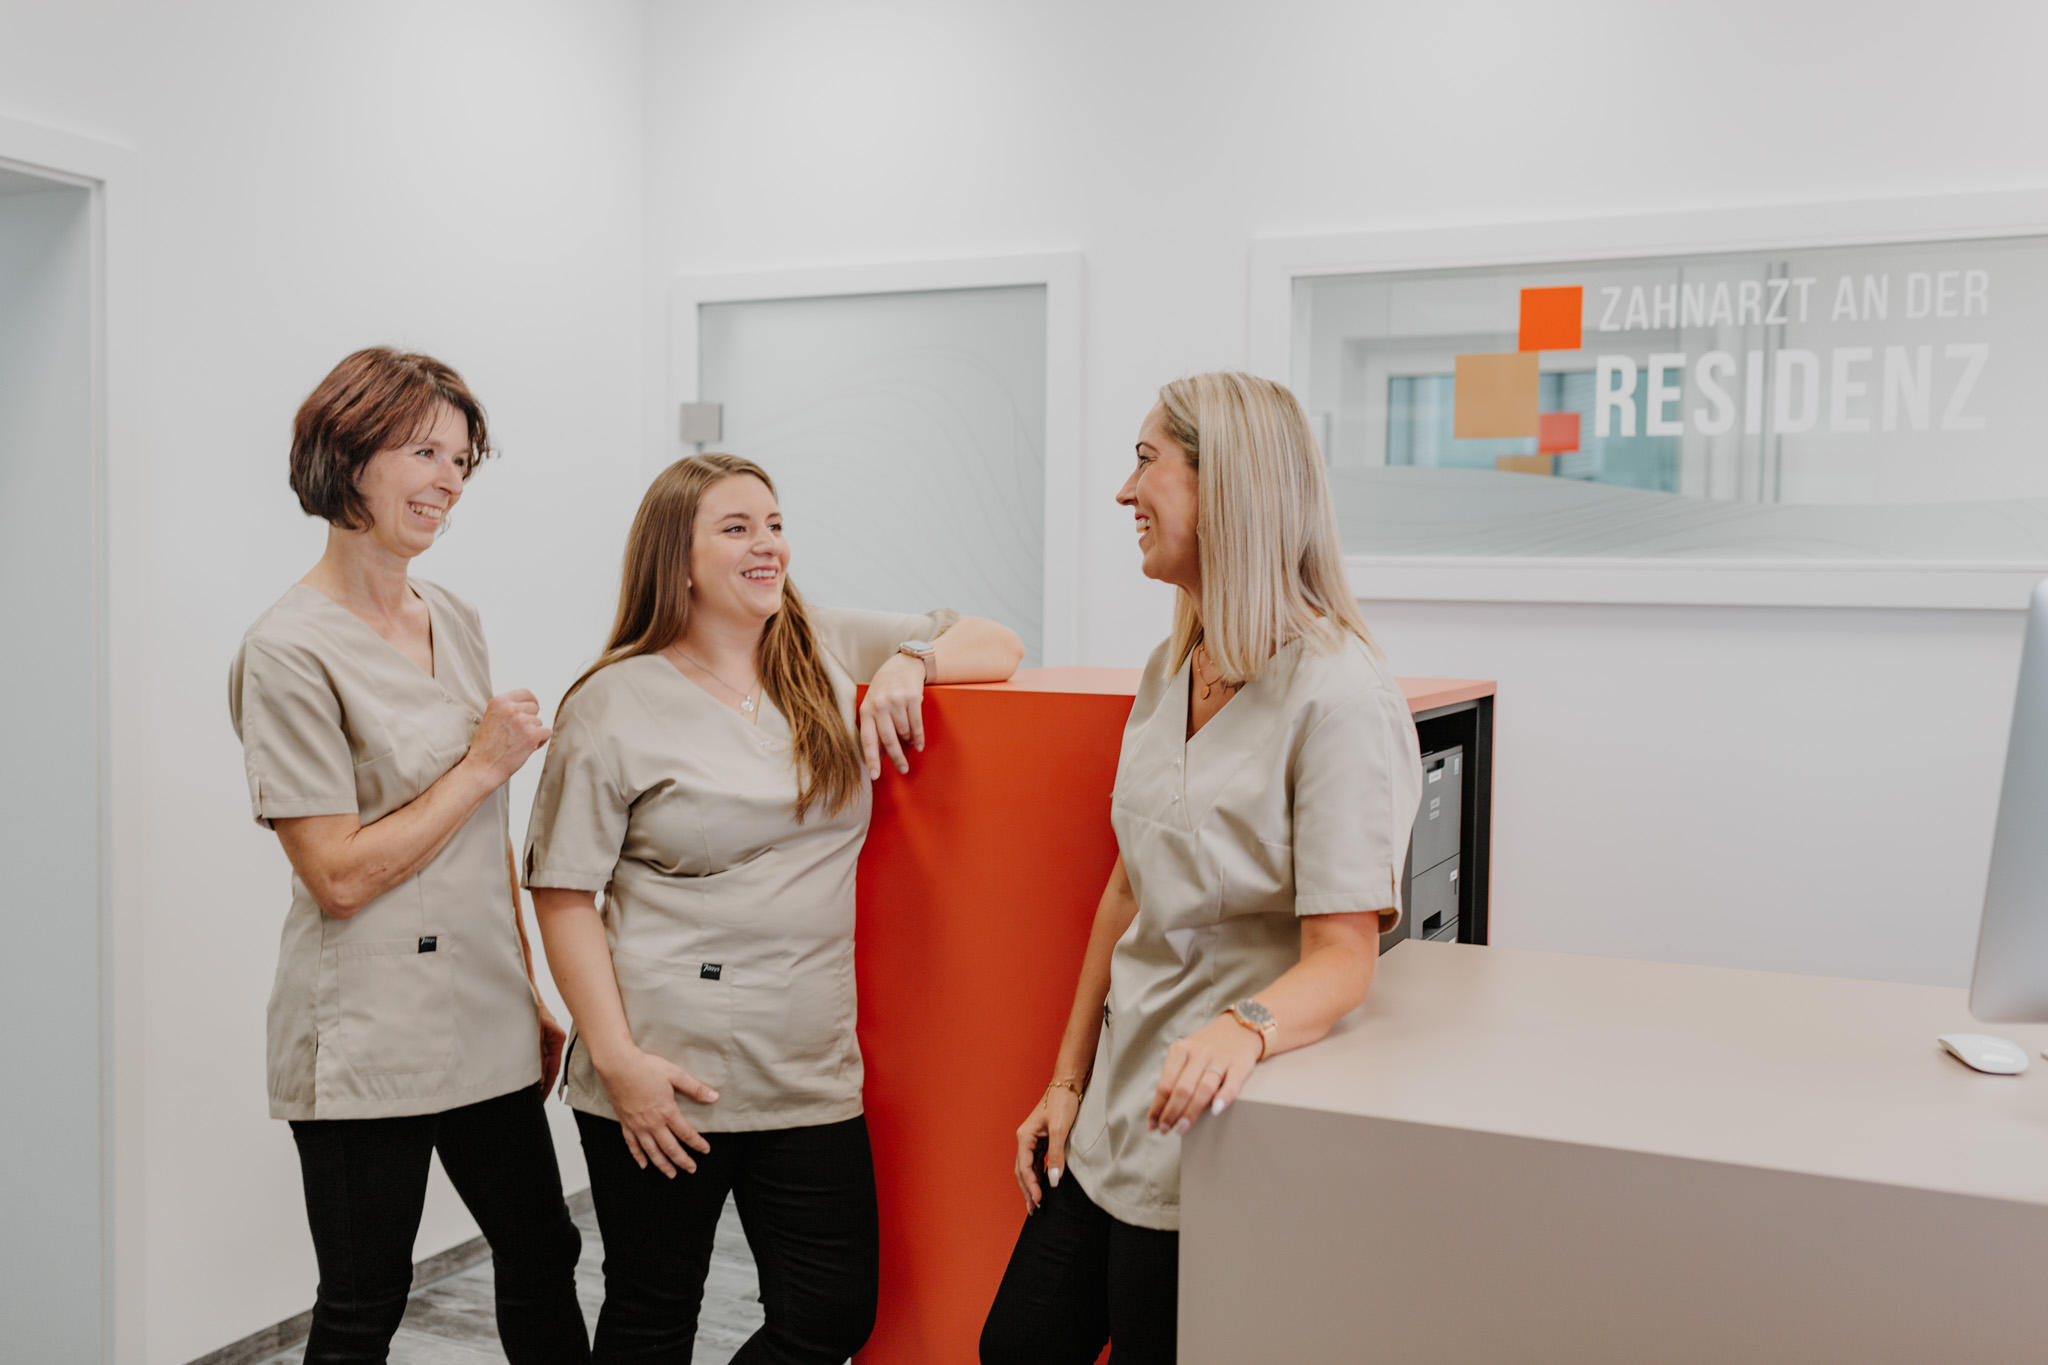 Kundenbild groß 5 Zahnarzt an der Residenz | Dr. David Müller